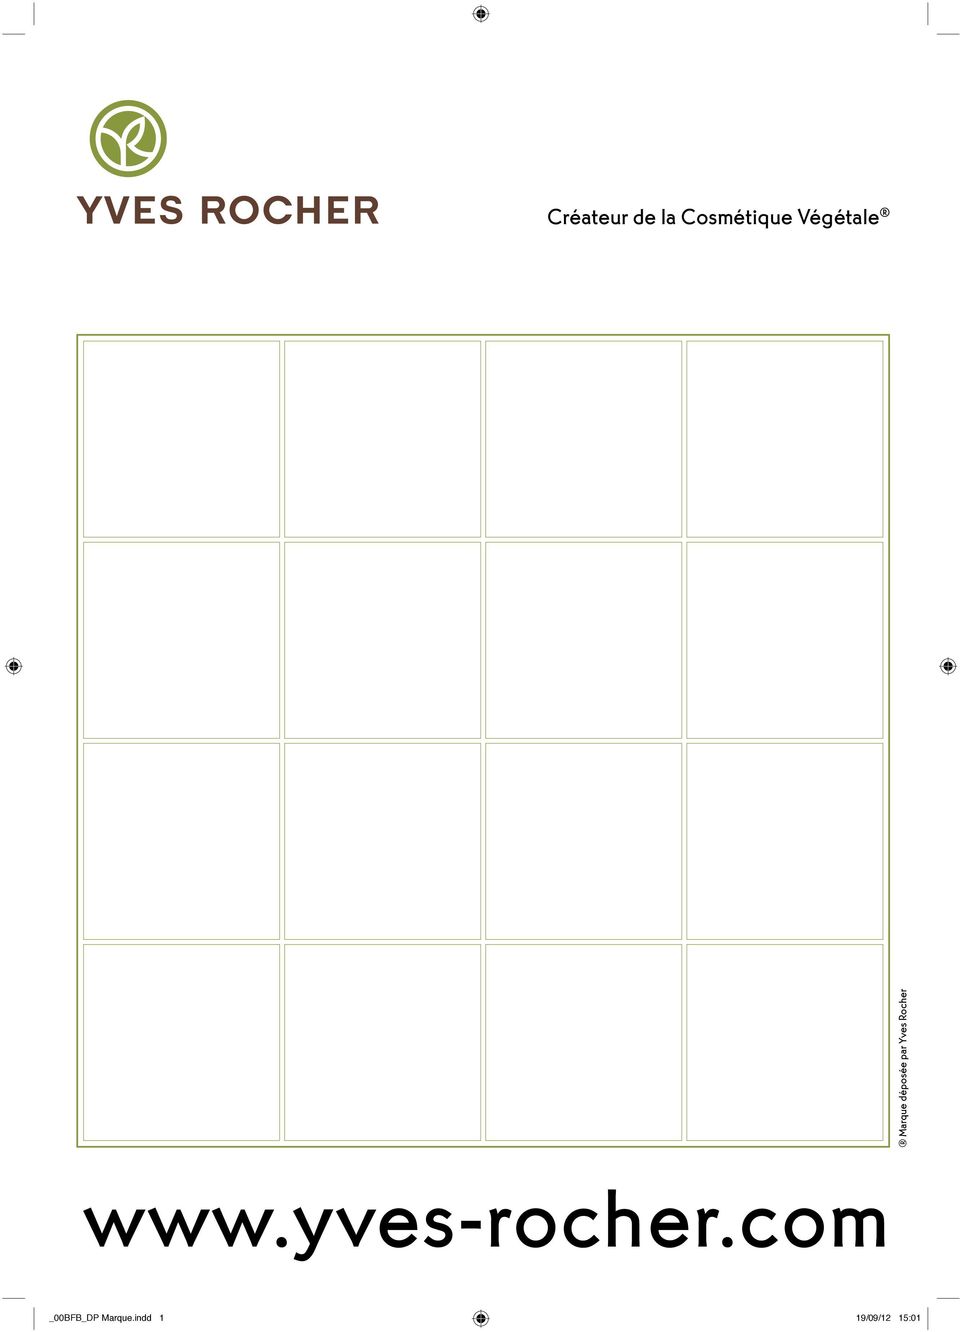 Yves Rocher www.yves-rocher.